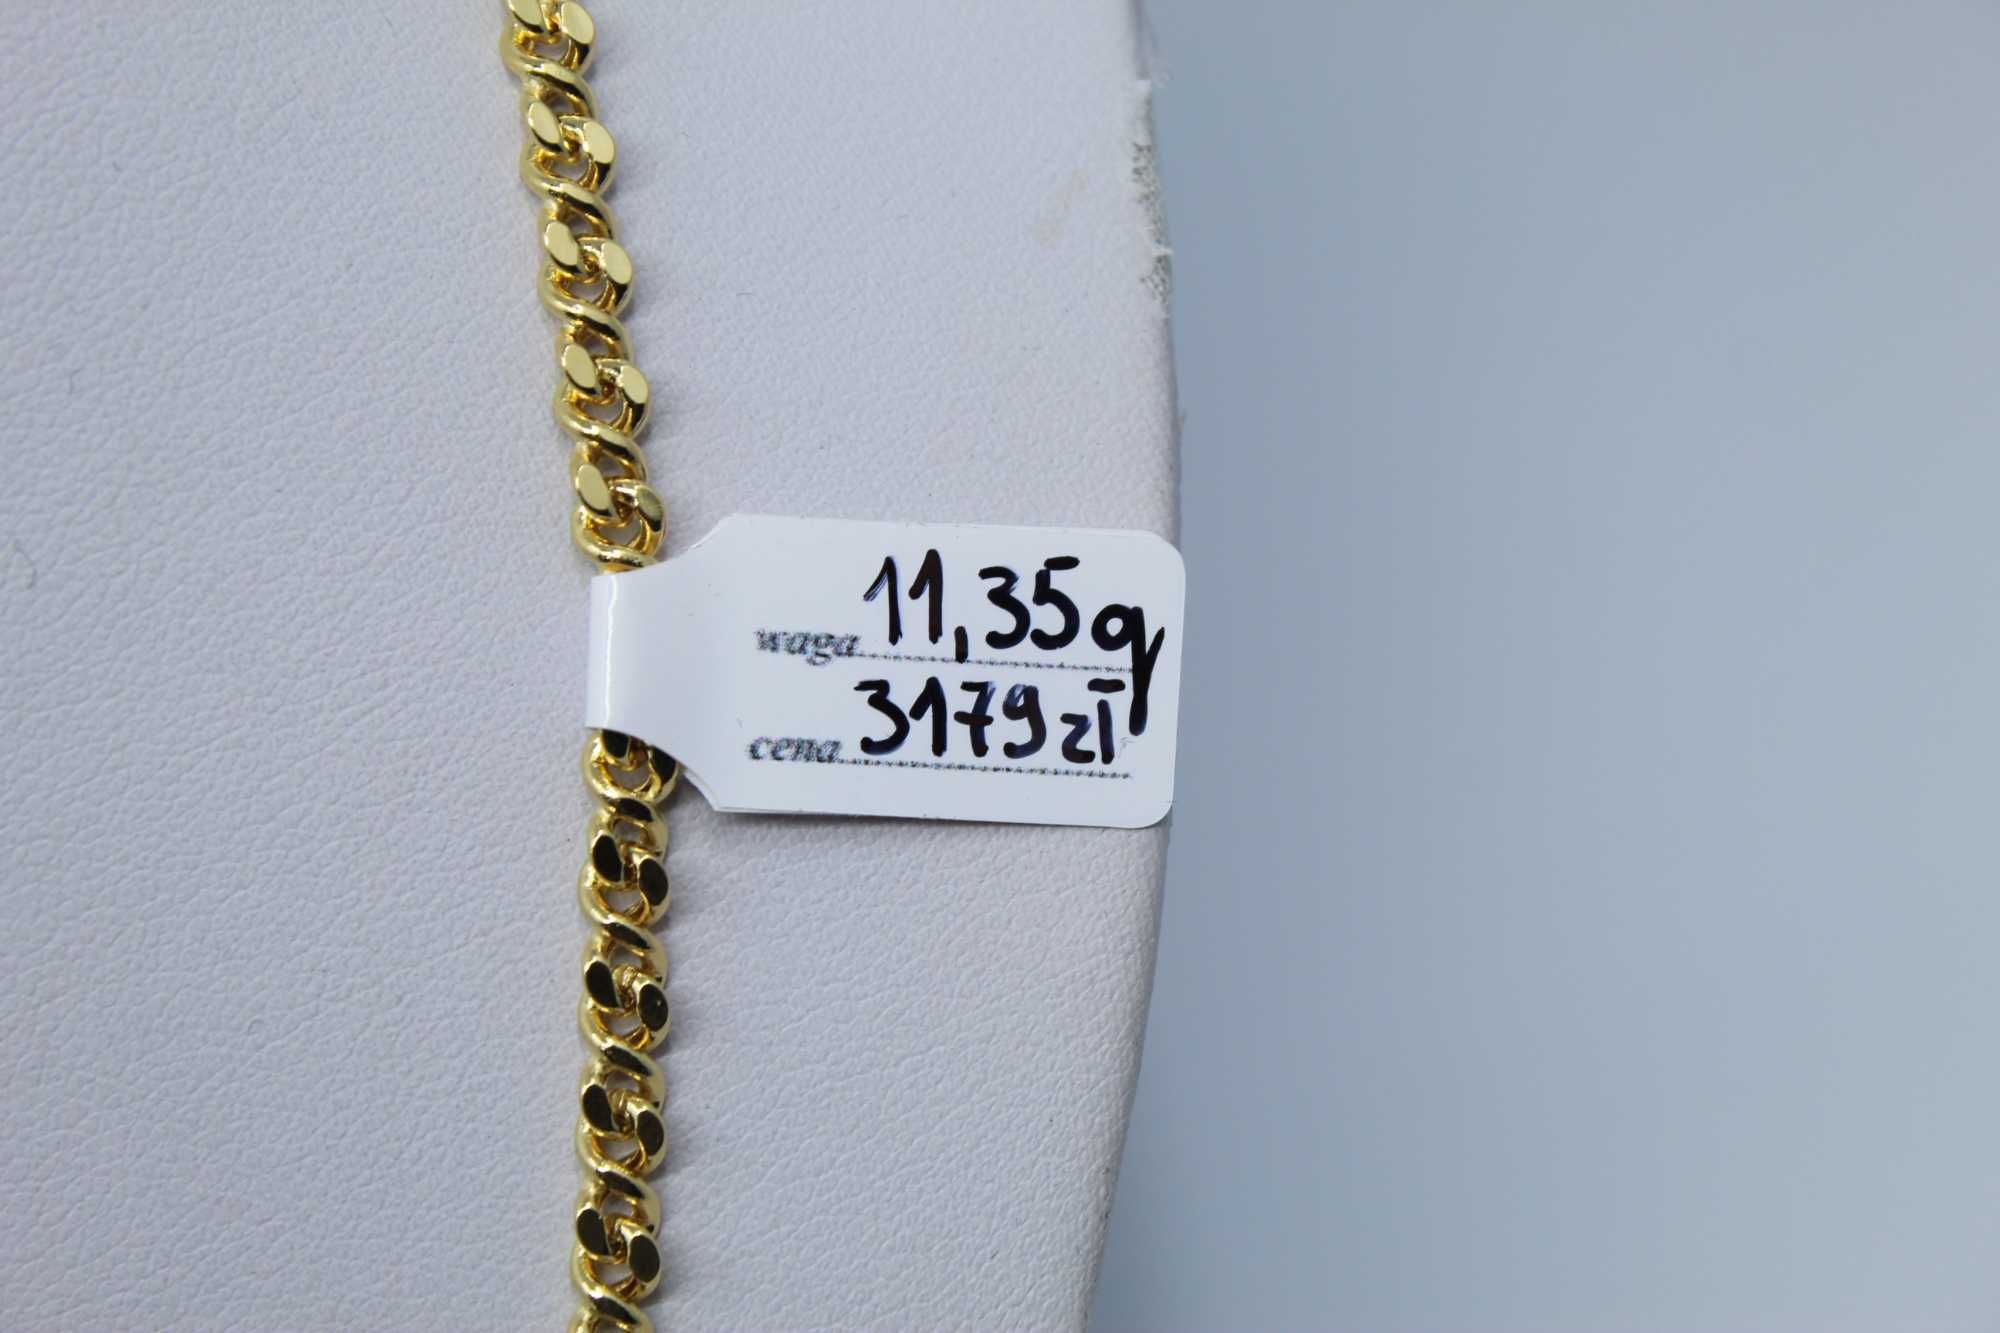 Złoty łańcuszek damski 585 11,35 g 55cm Unikat Nowe WYSYŁKA DPD GRATIS